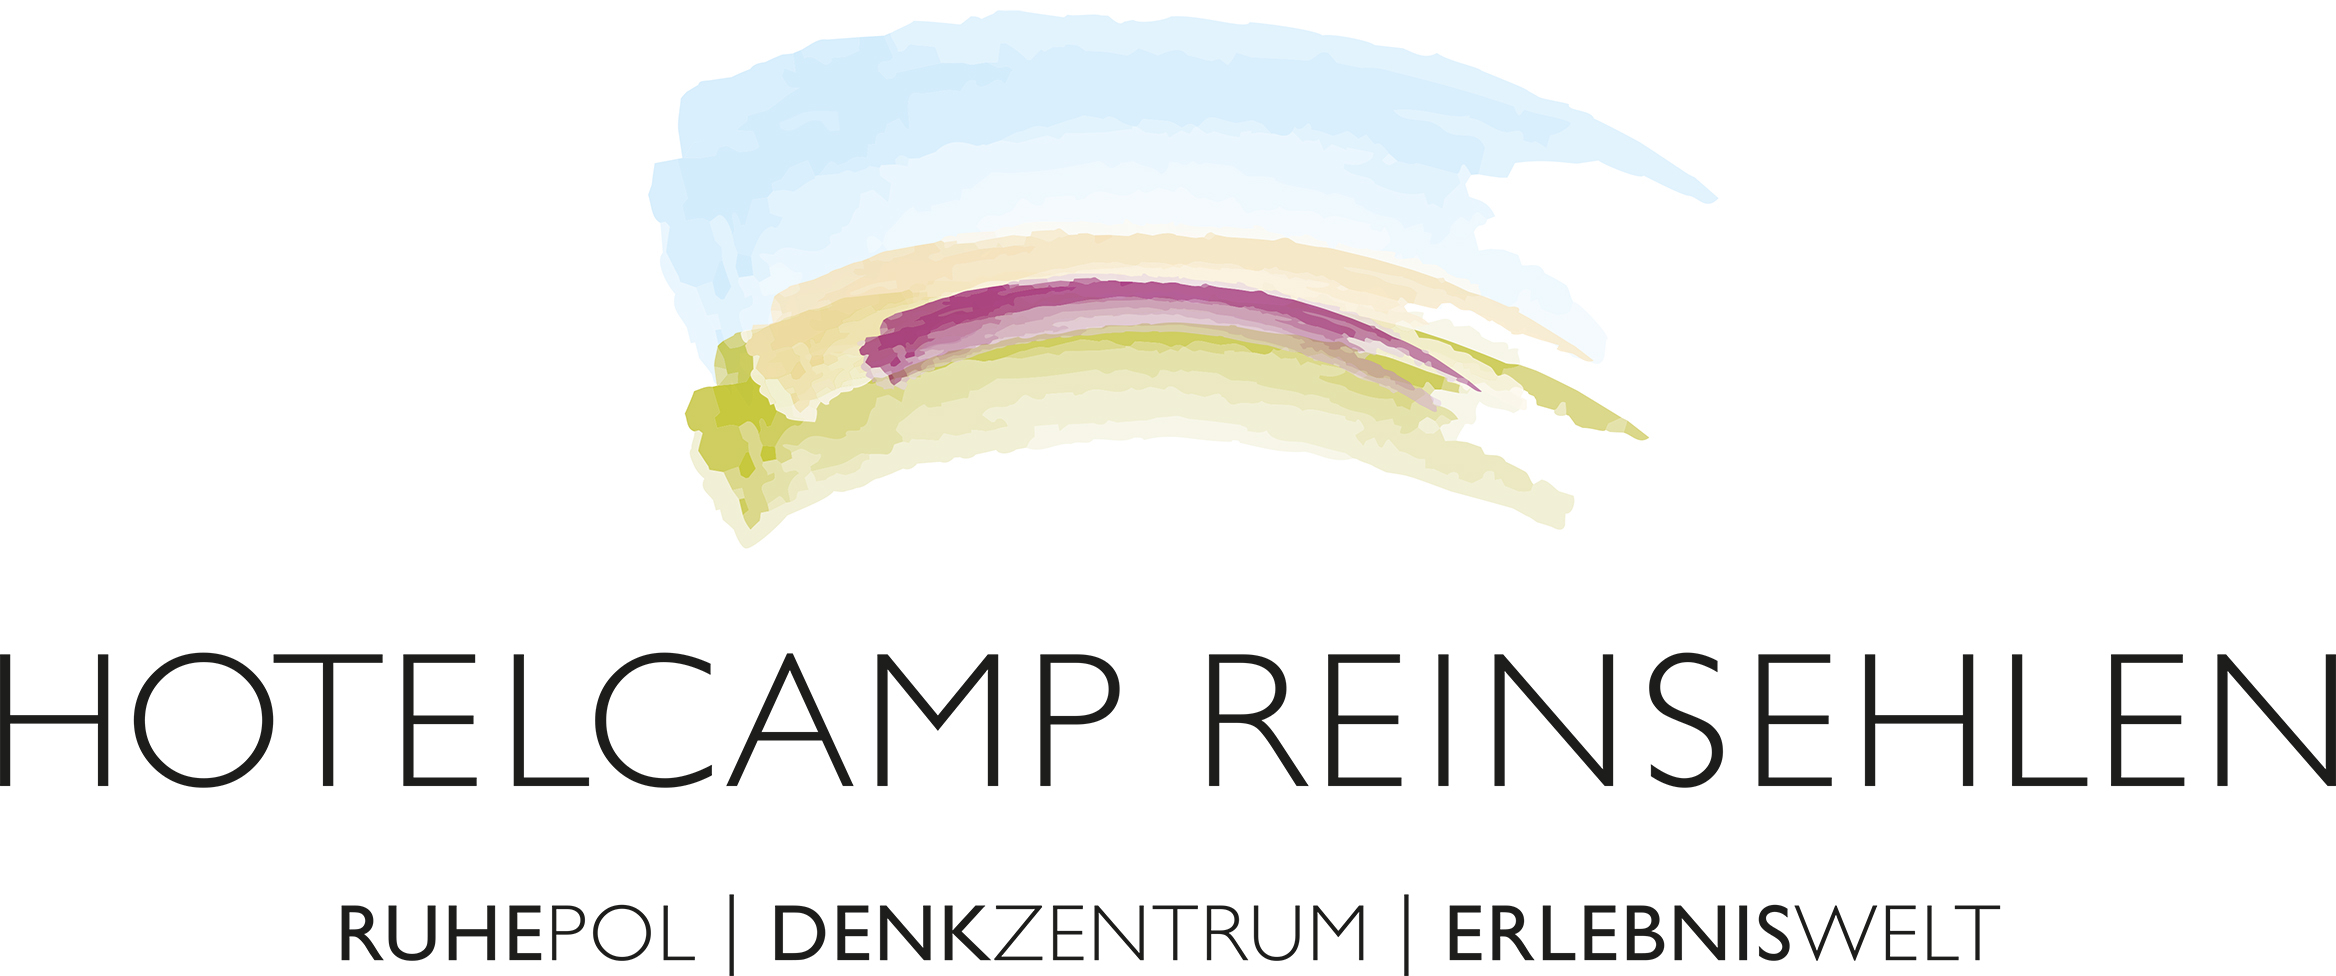 HOTELCAMP REINSEHLEN | Camp Reinsehlen Hotel GmbH Logo